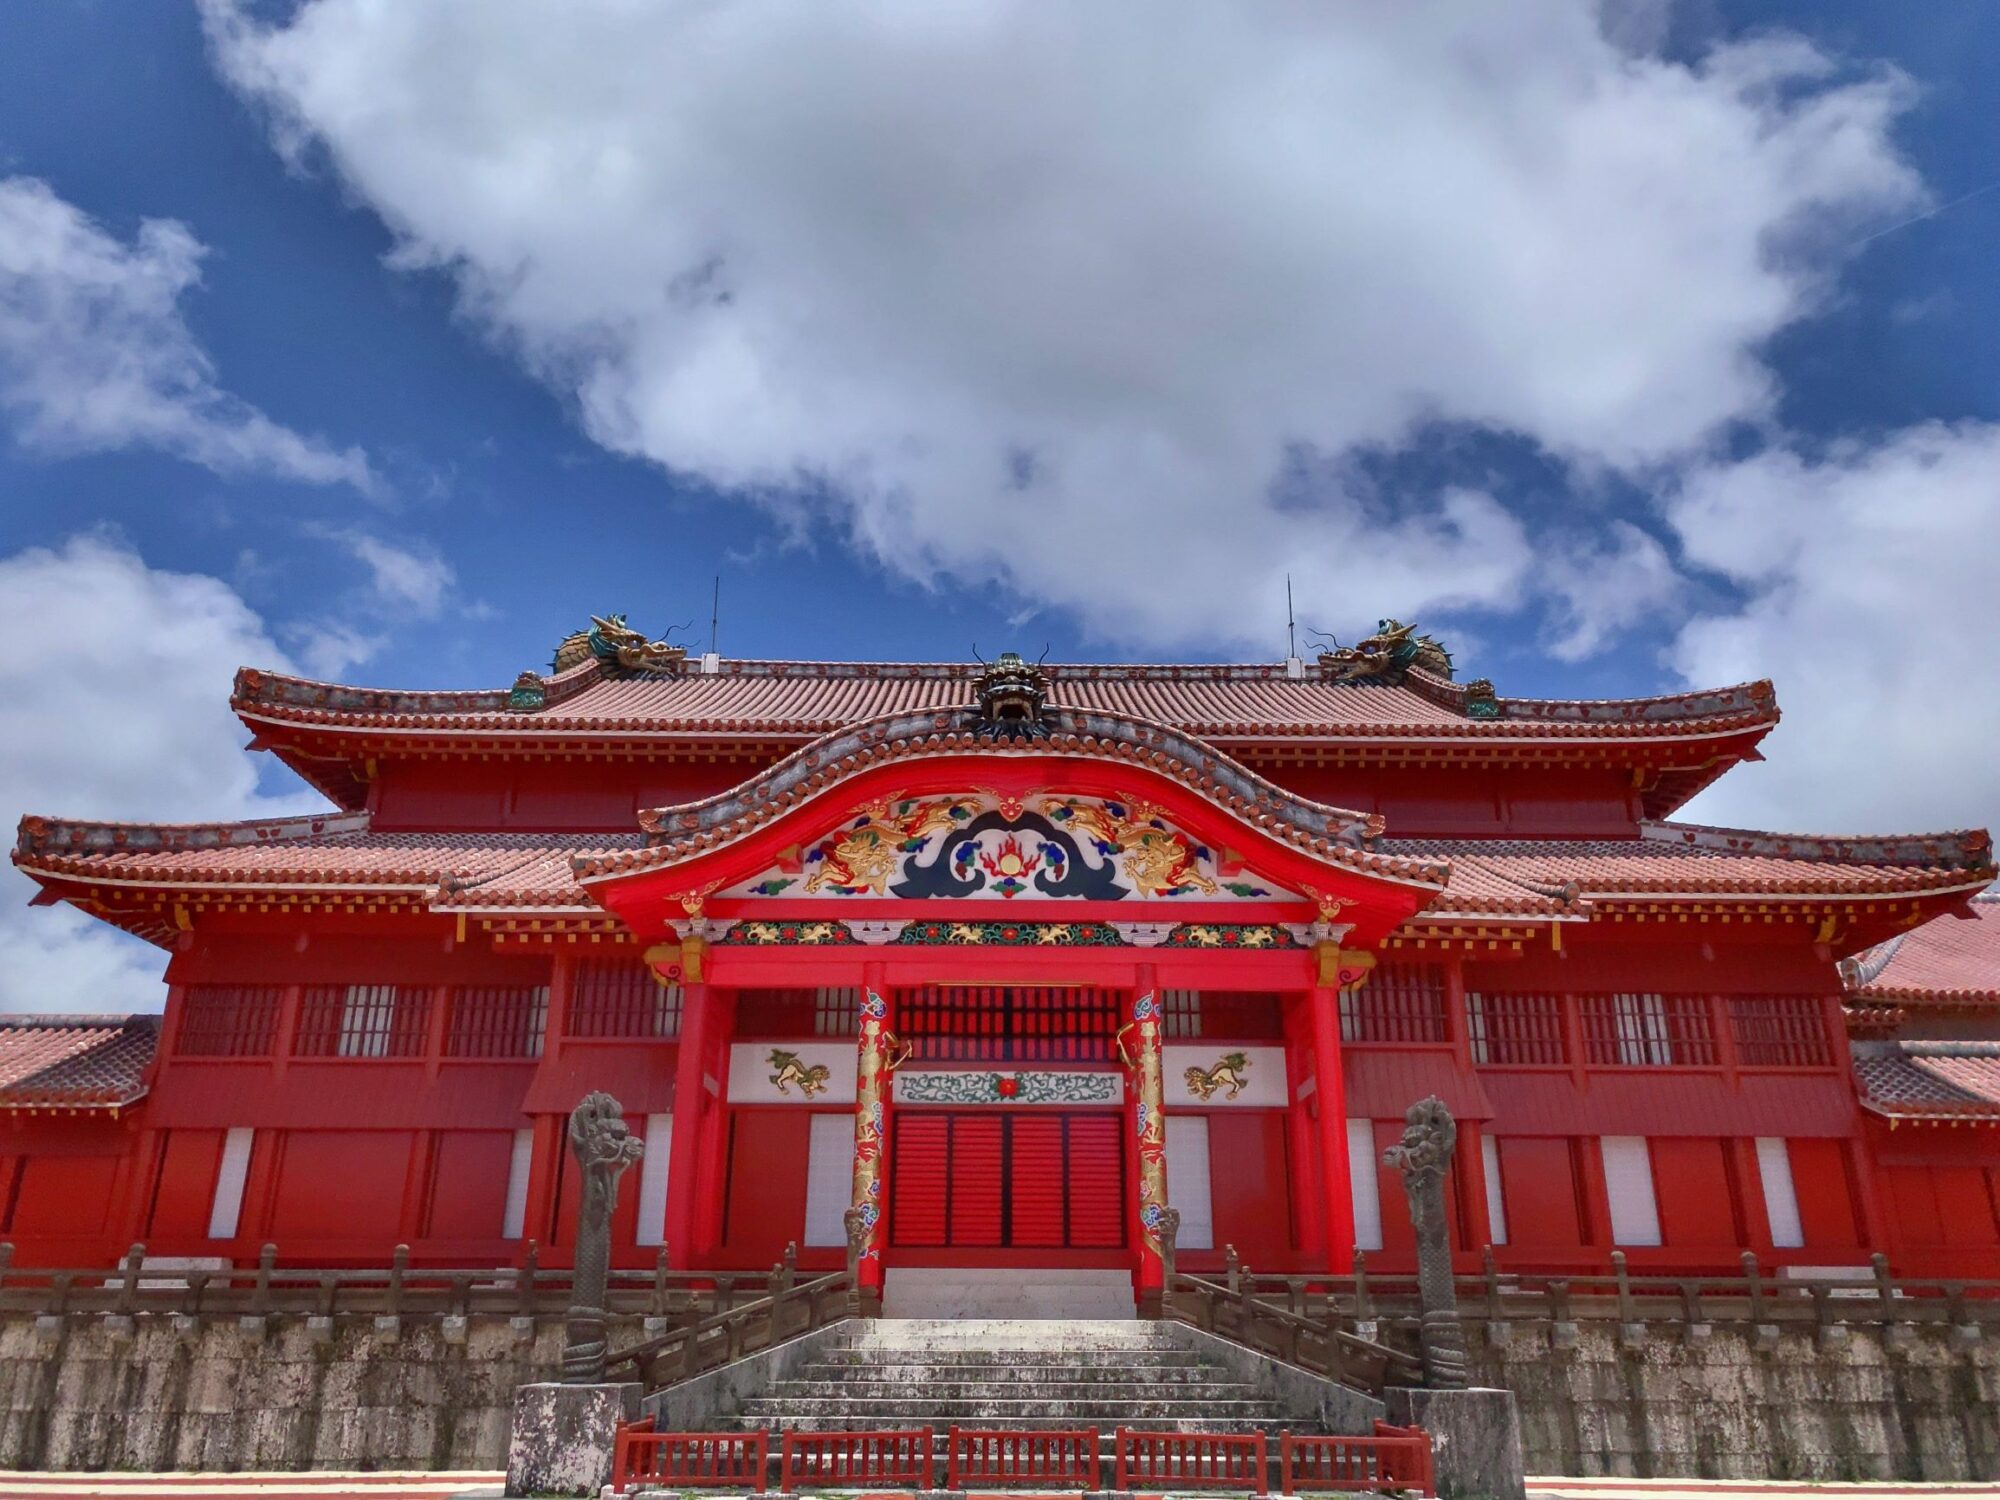 日本建築の屋根を特徴づける「唐破風」 | A's Tours u0026 ITs